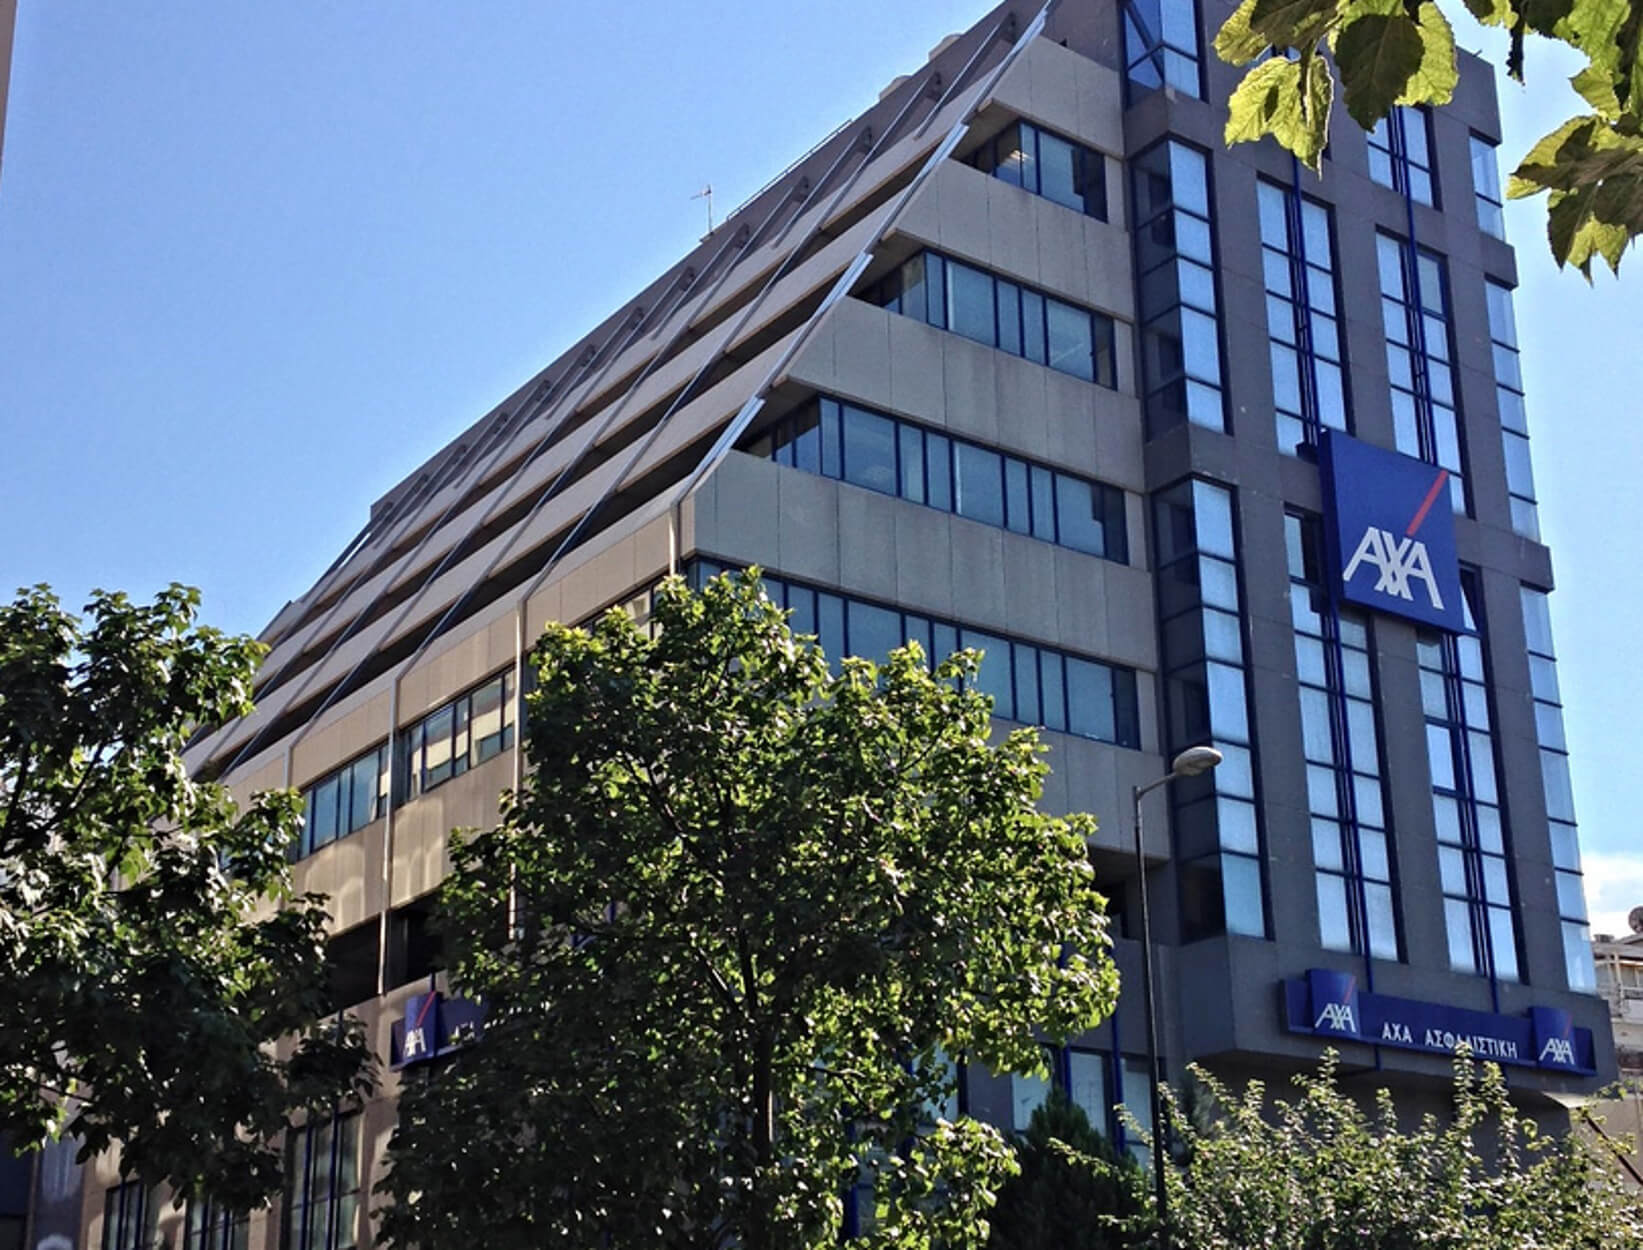 Επίθεση στα γραφεία της ΑXA Ασφαλιστικής στην Μιχαλακοπούλου